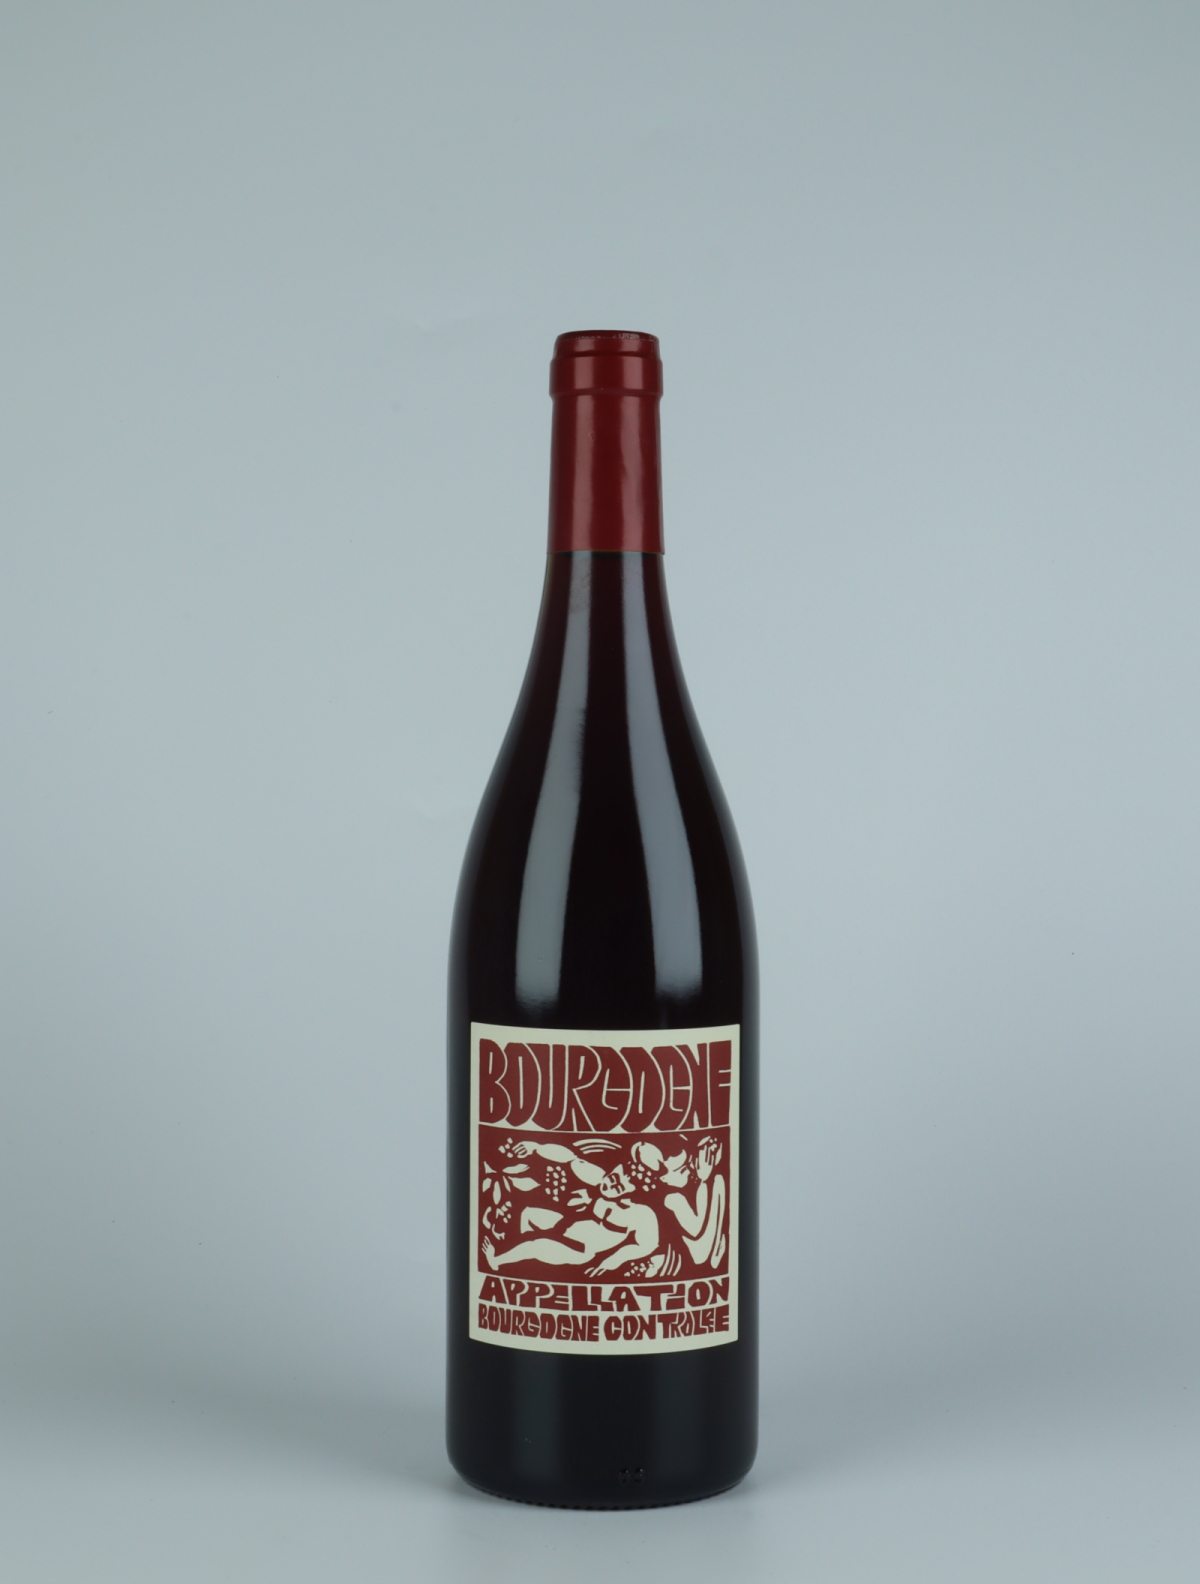 A bottle 2021 Bourgogne Rouge Red wine from La Sœur Cadette, Burgundy in France